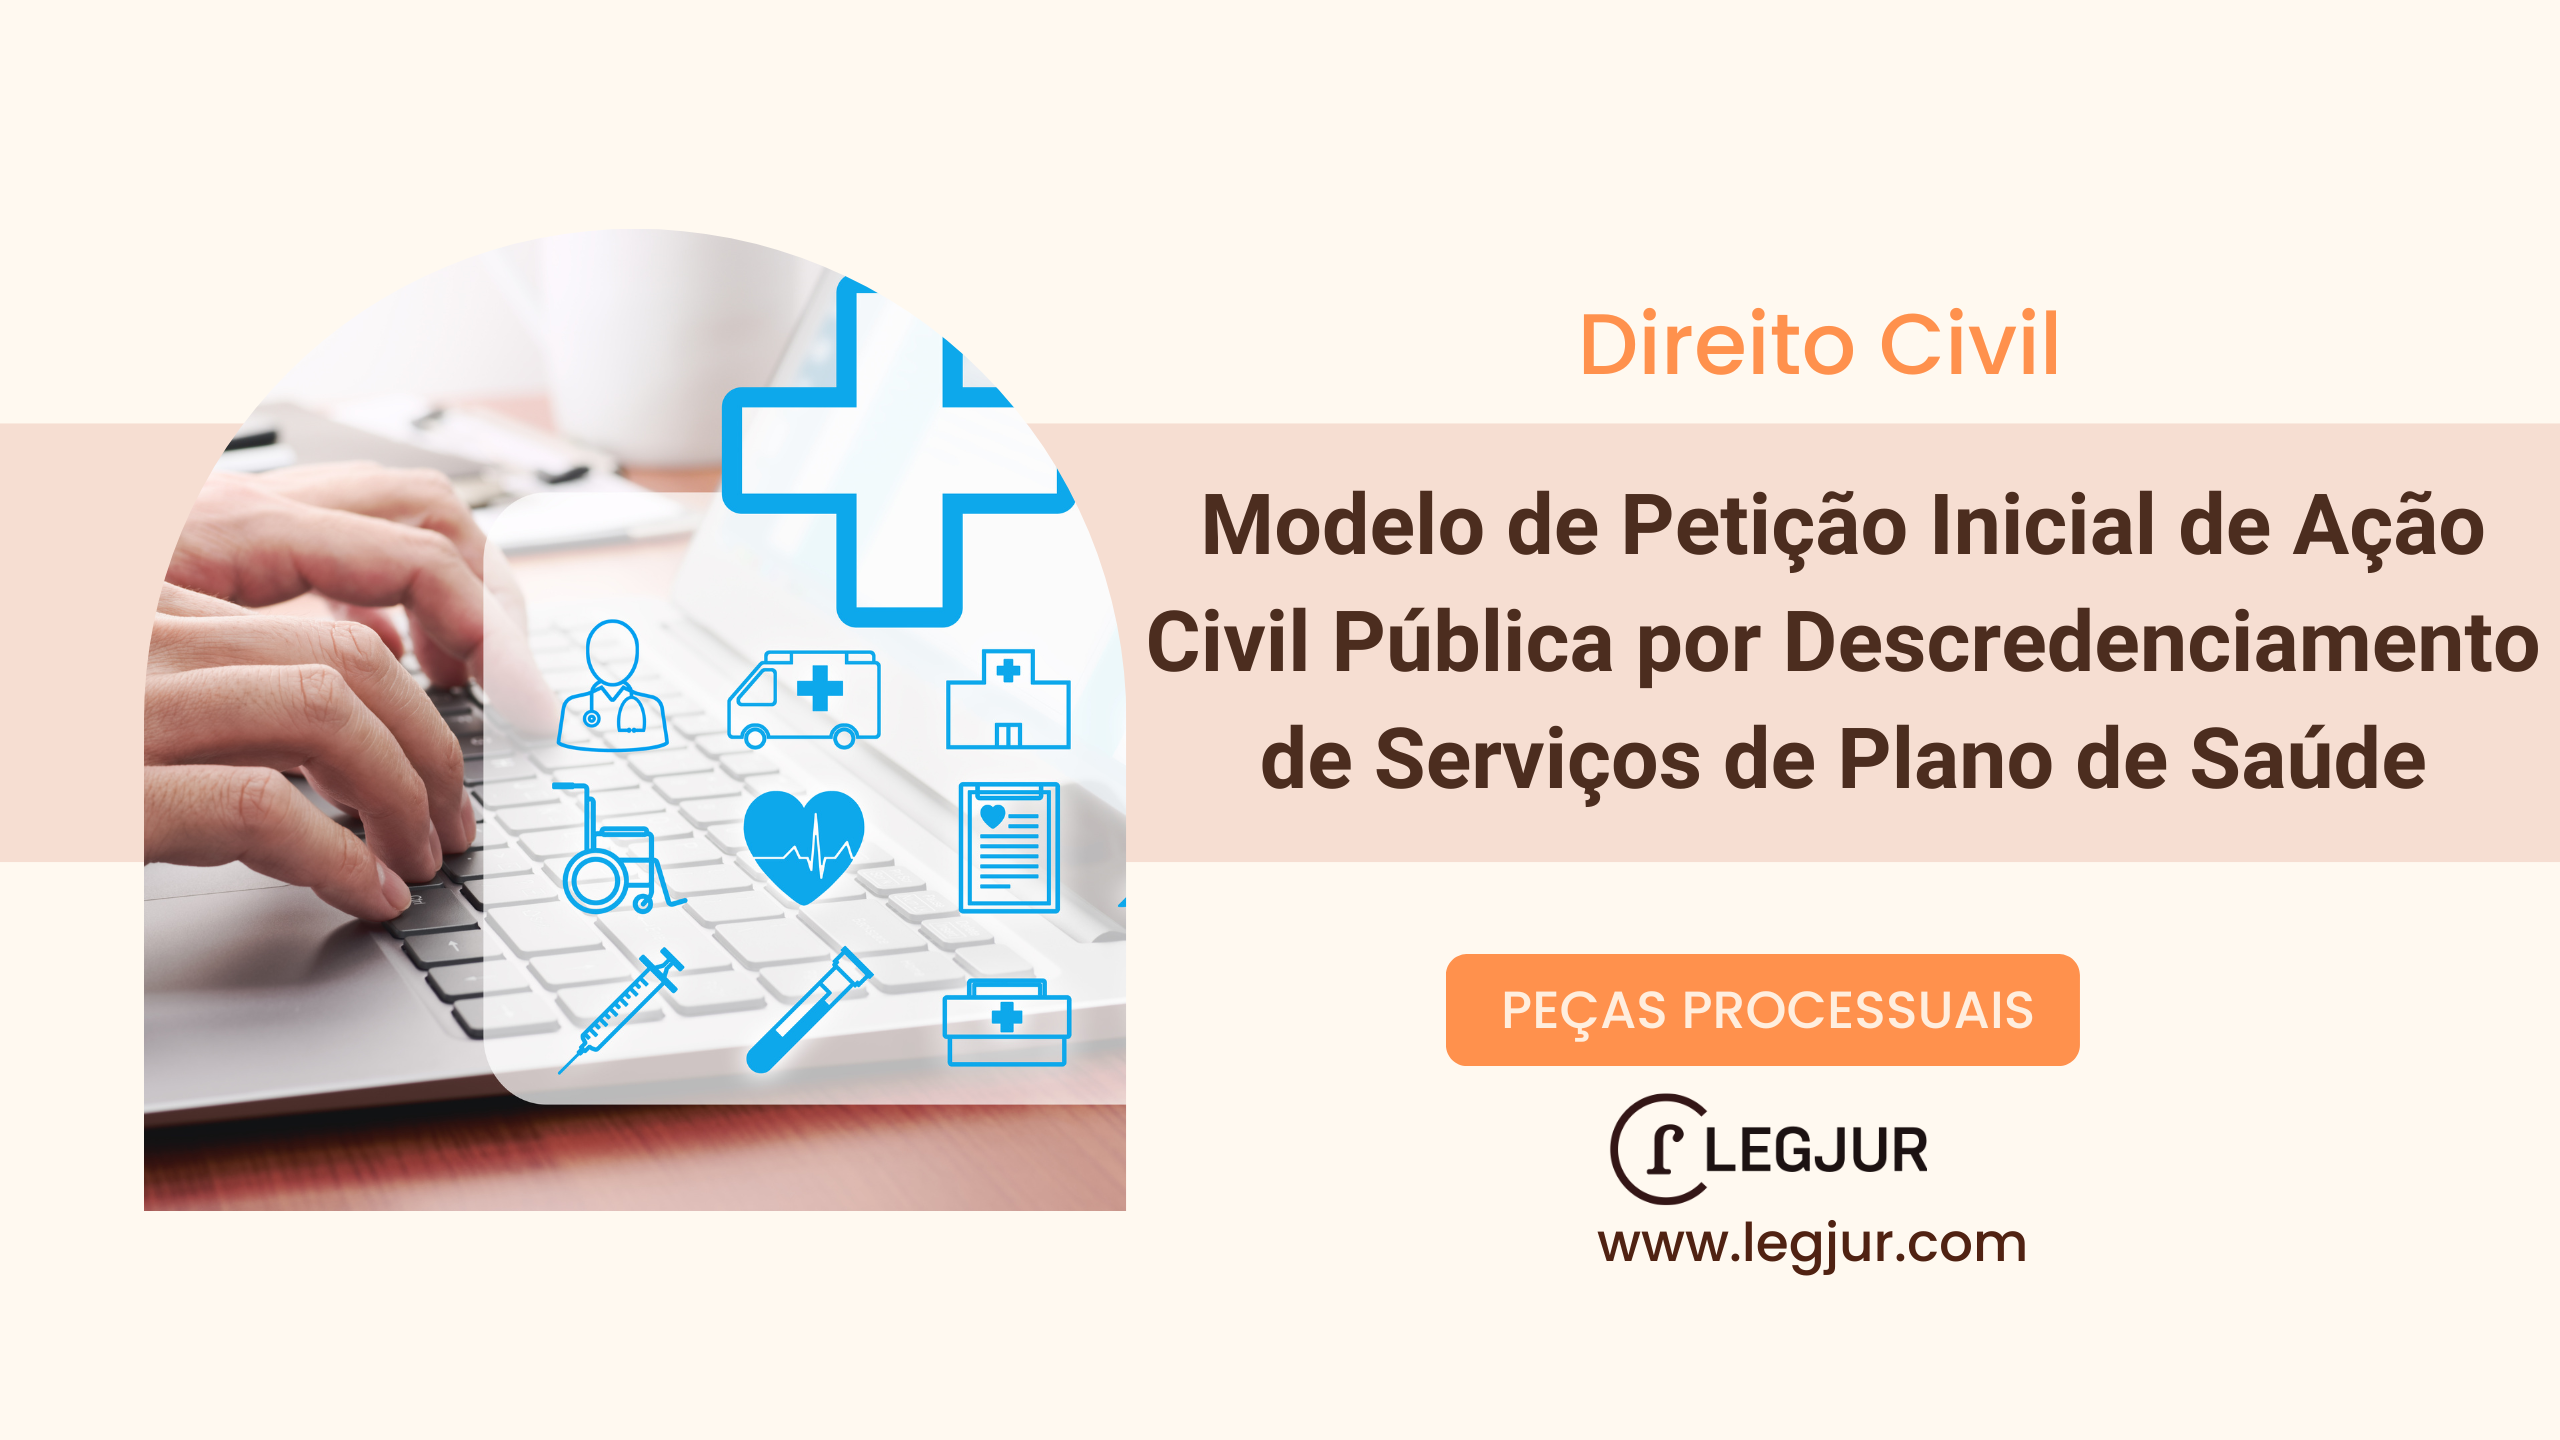 Modelo de Petição Inicial de Ação Civil Pública por Descredenciamento de Serviços de Plano de Saúde